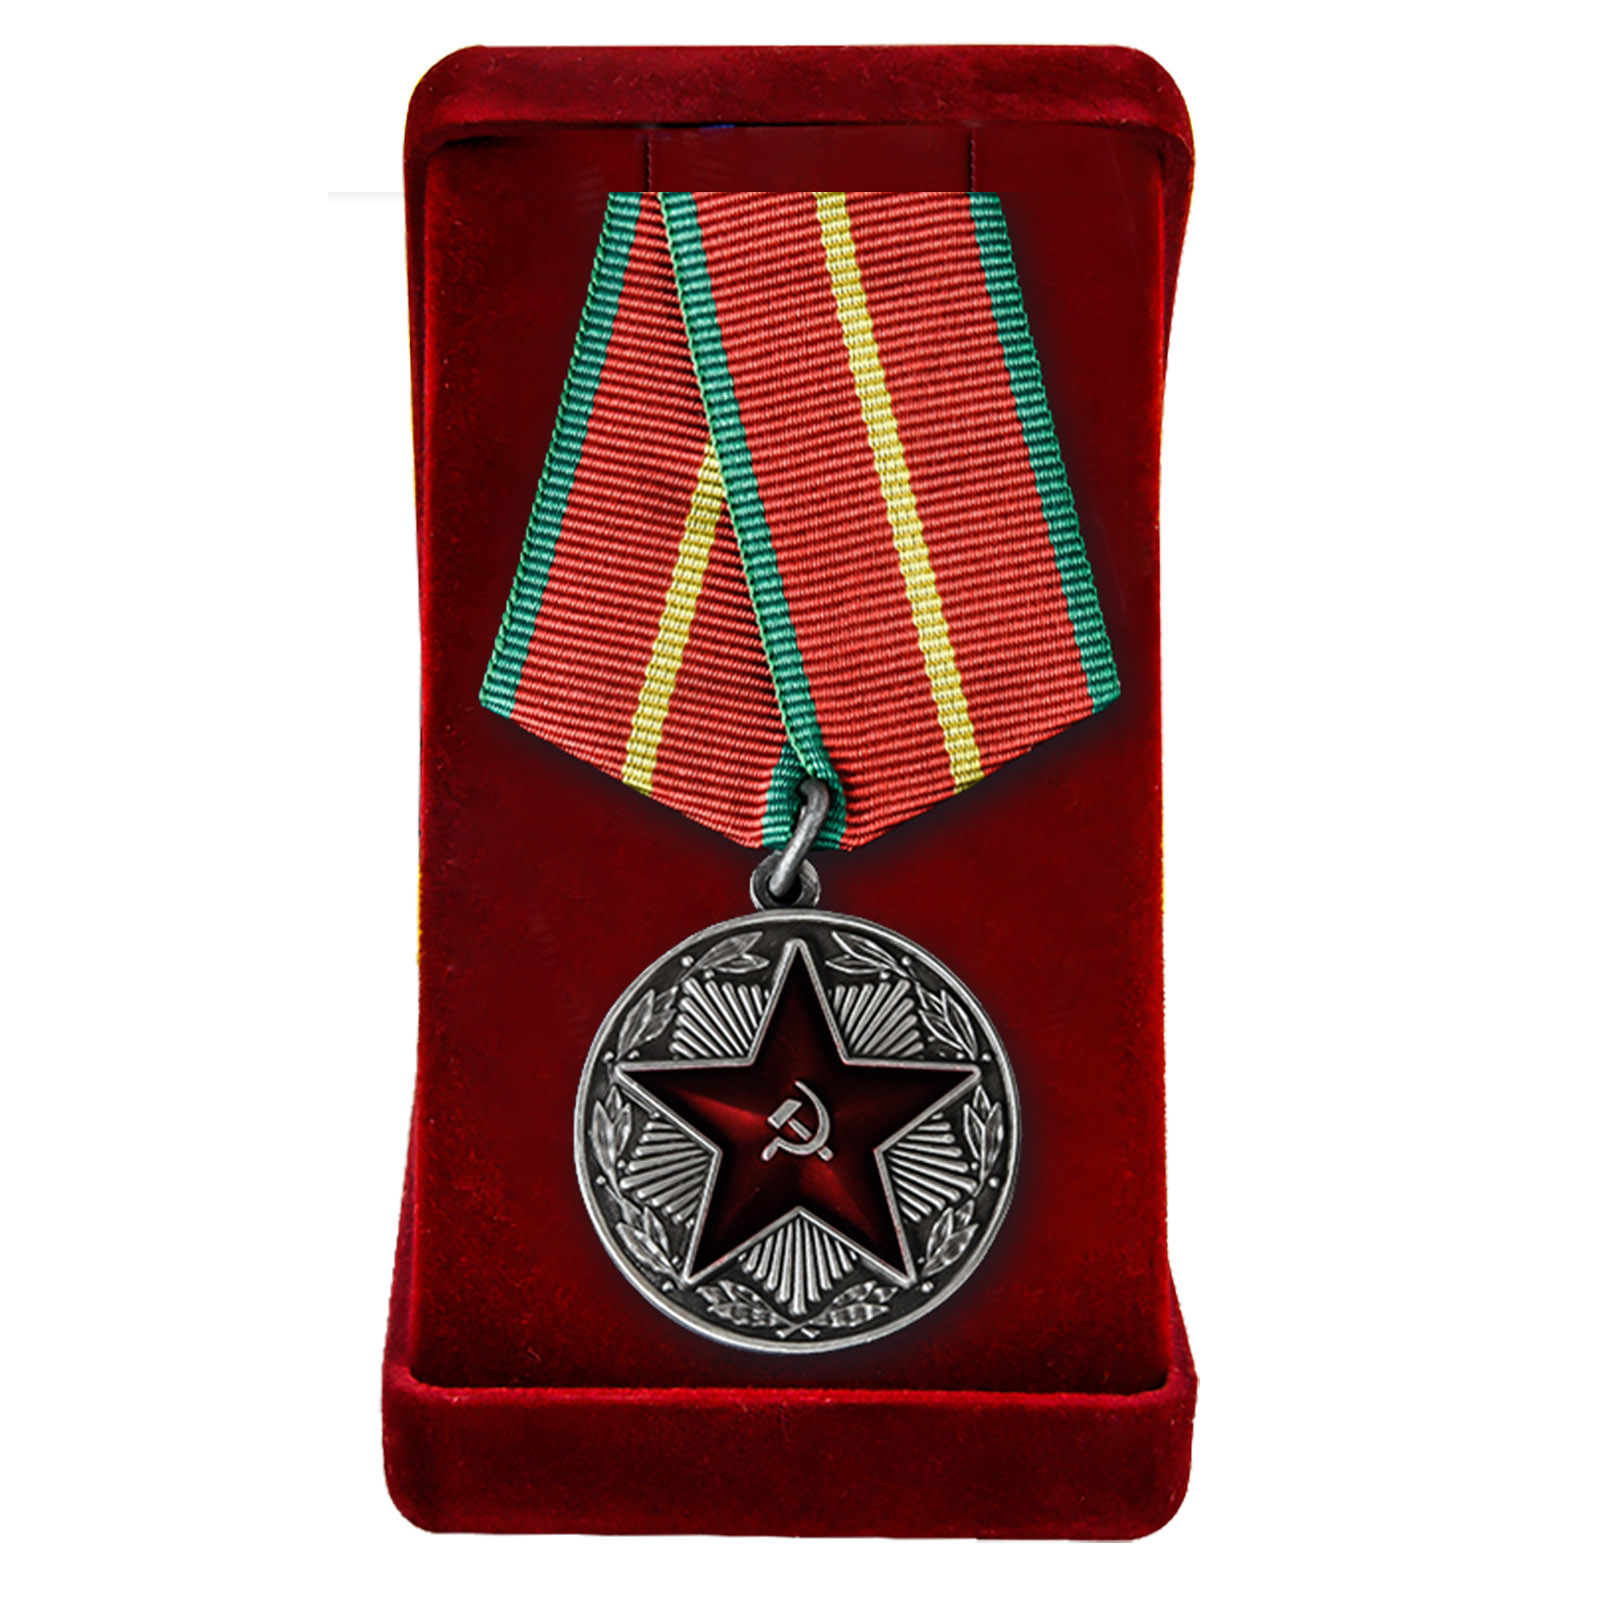 Муляж медали  "За безупречную службу в Вооруженных Силах СССР" 1-й степени